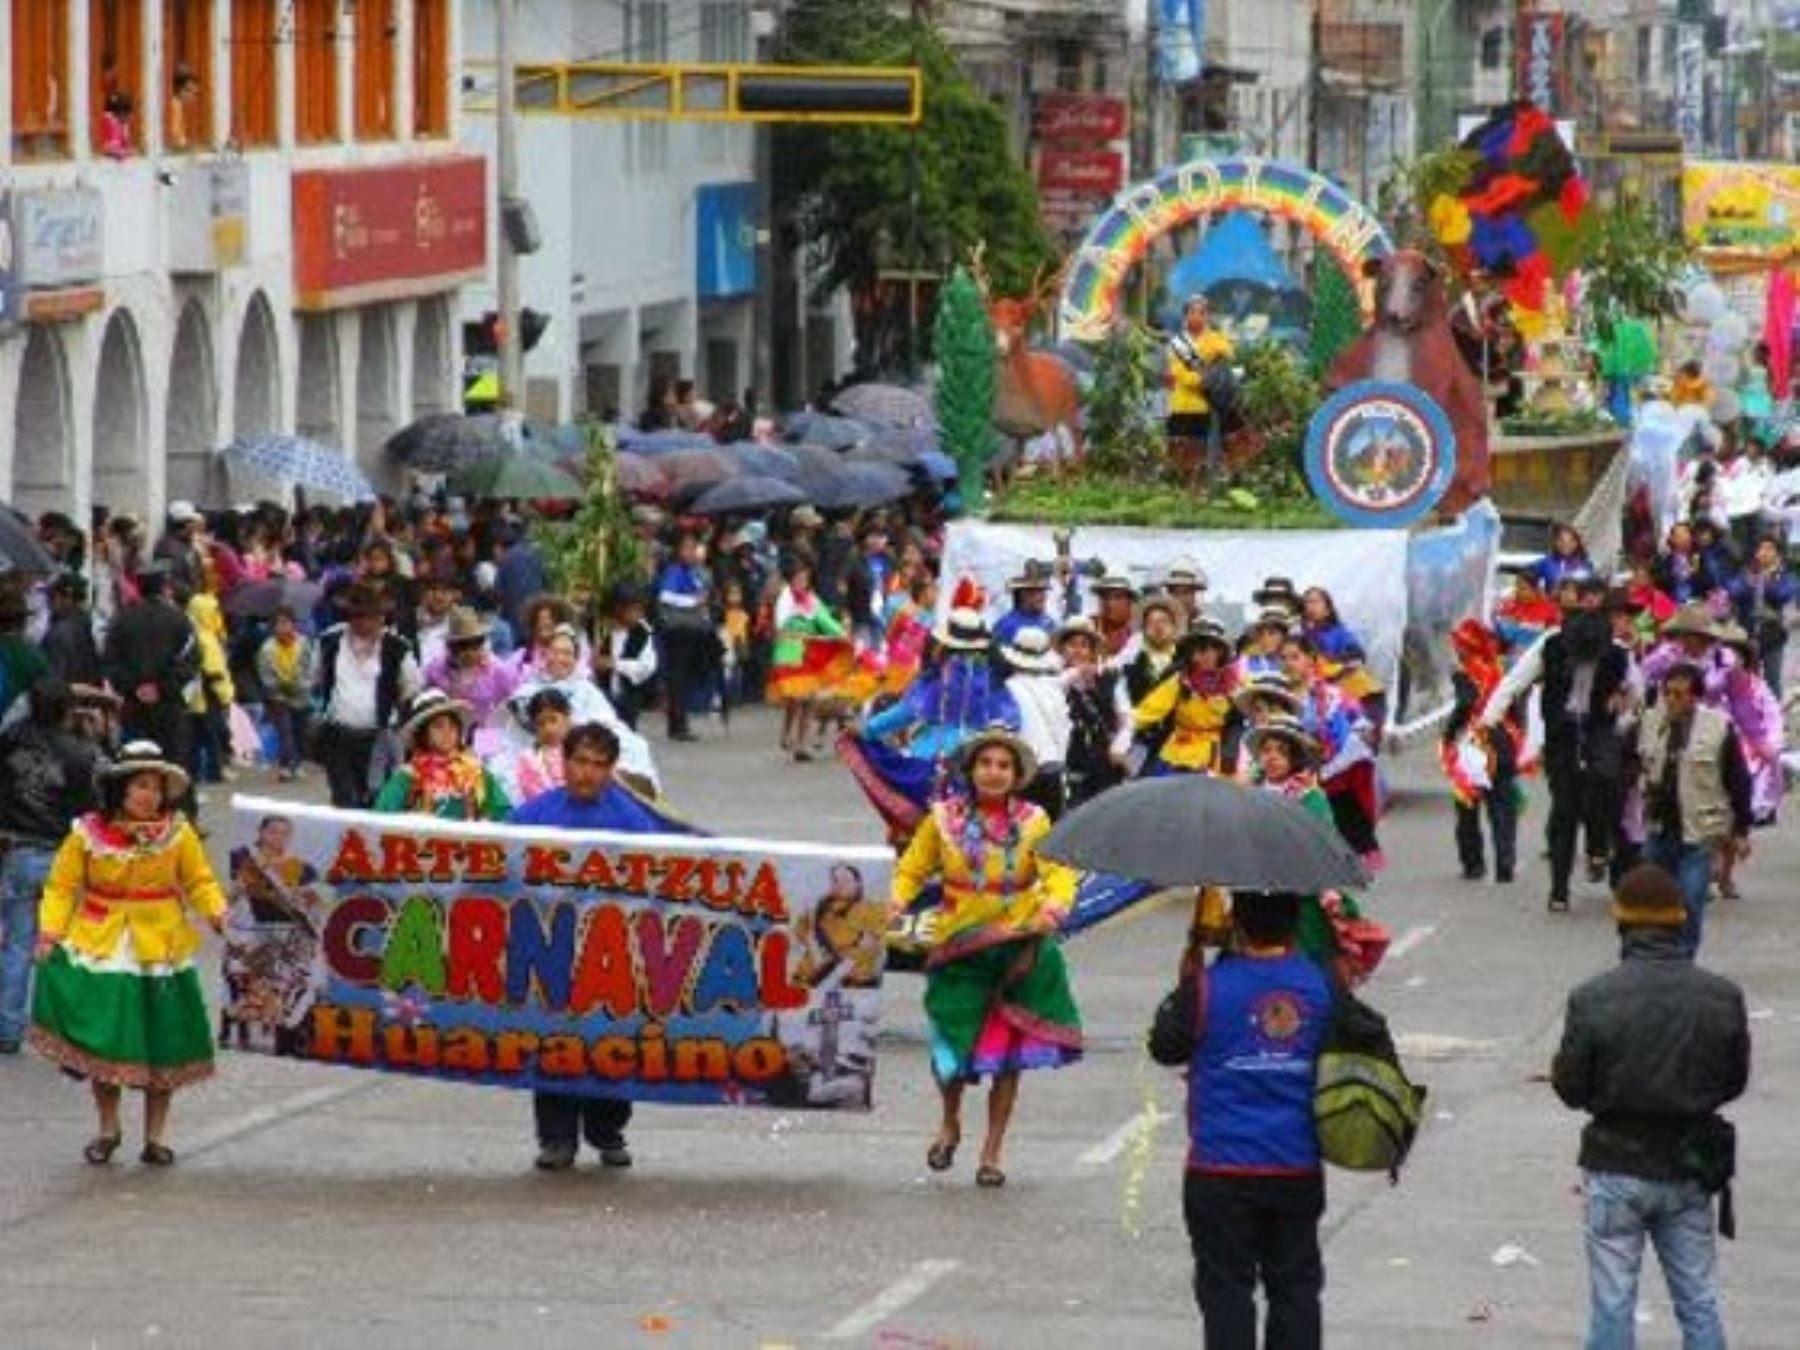 Con el entierro simbólico del "rey Momo" en el río Quillcay, en presencia de numerosos pobladores, finaliza hoy el tradicional Carnaval Huaracino, que en su edición 2016 congregó a alrededor de 5,000 turistas, entre nacionales y extranjeros.